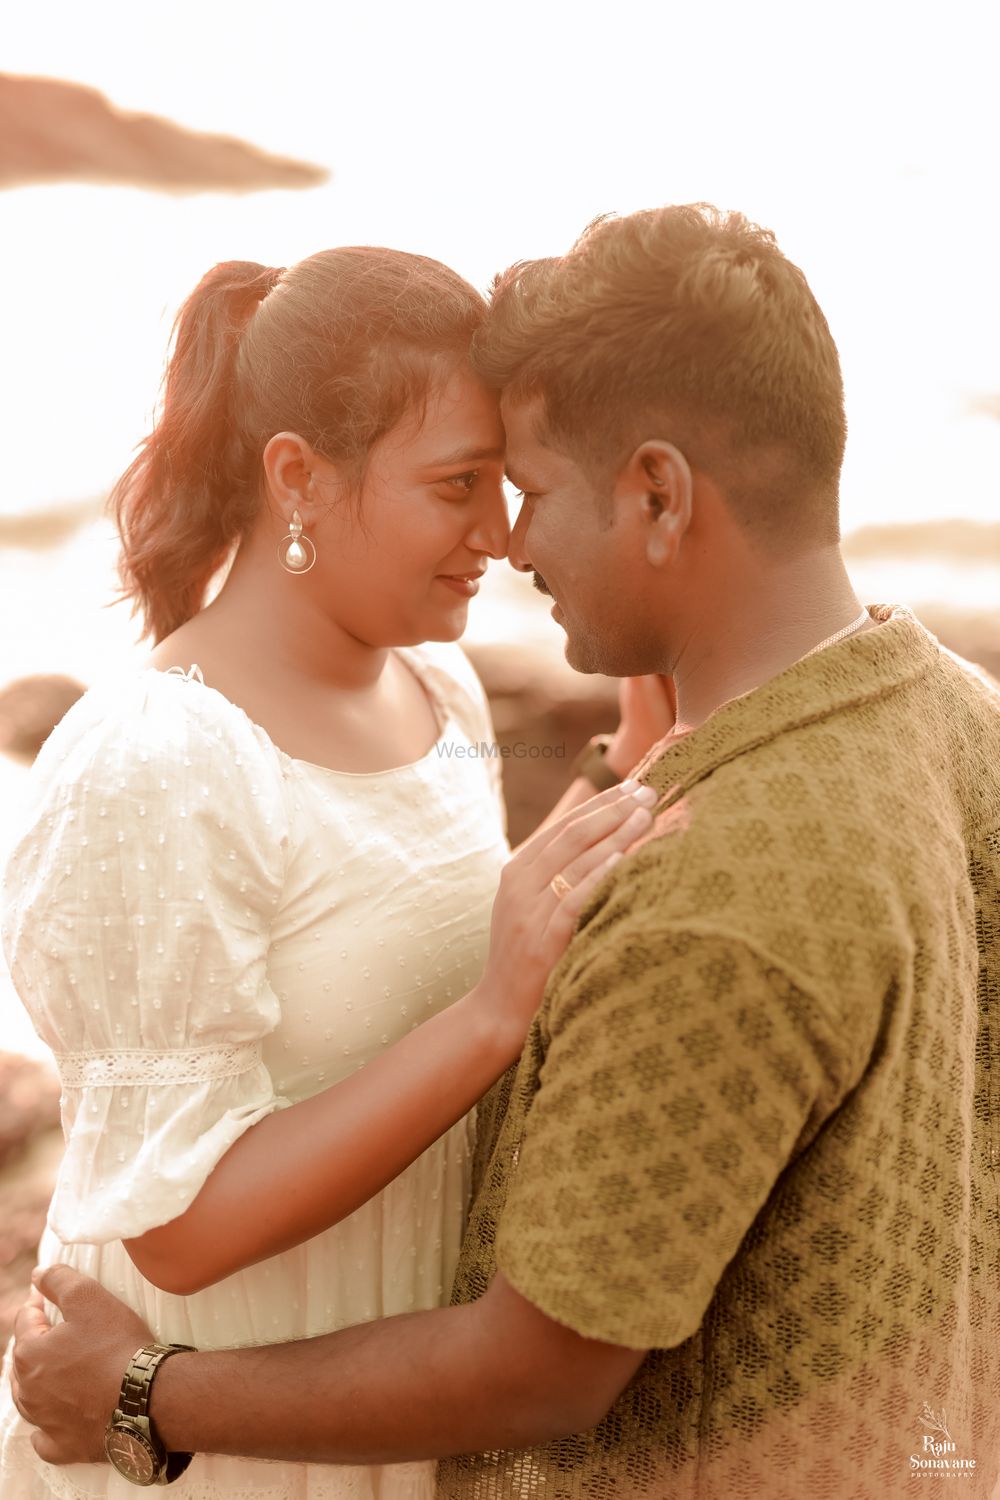 Photo From SID + GAYU PRTE WEDDING - By Raju Sonawane Photography & Film